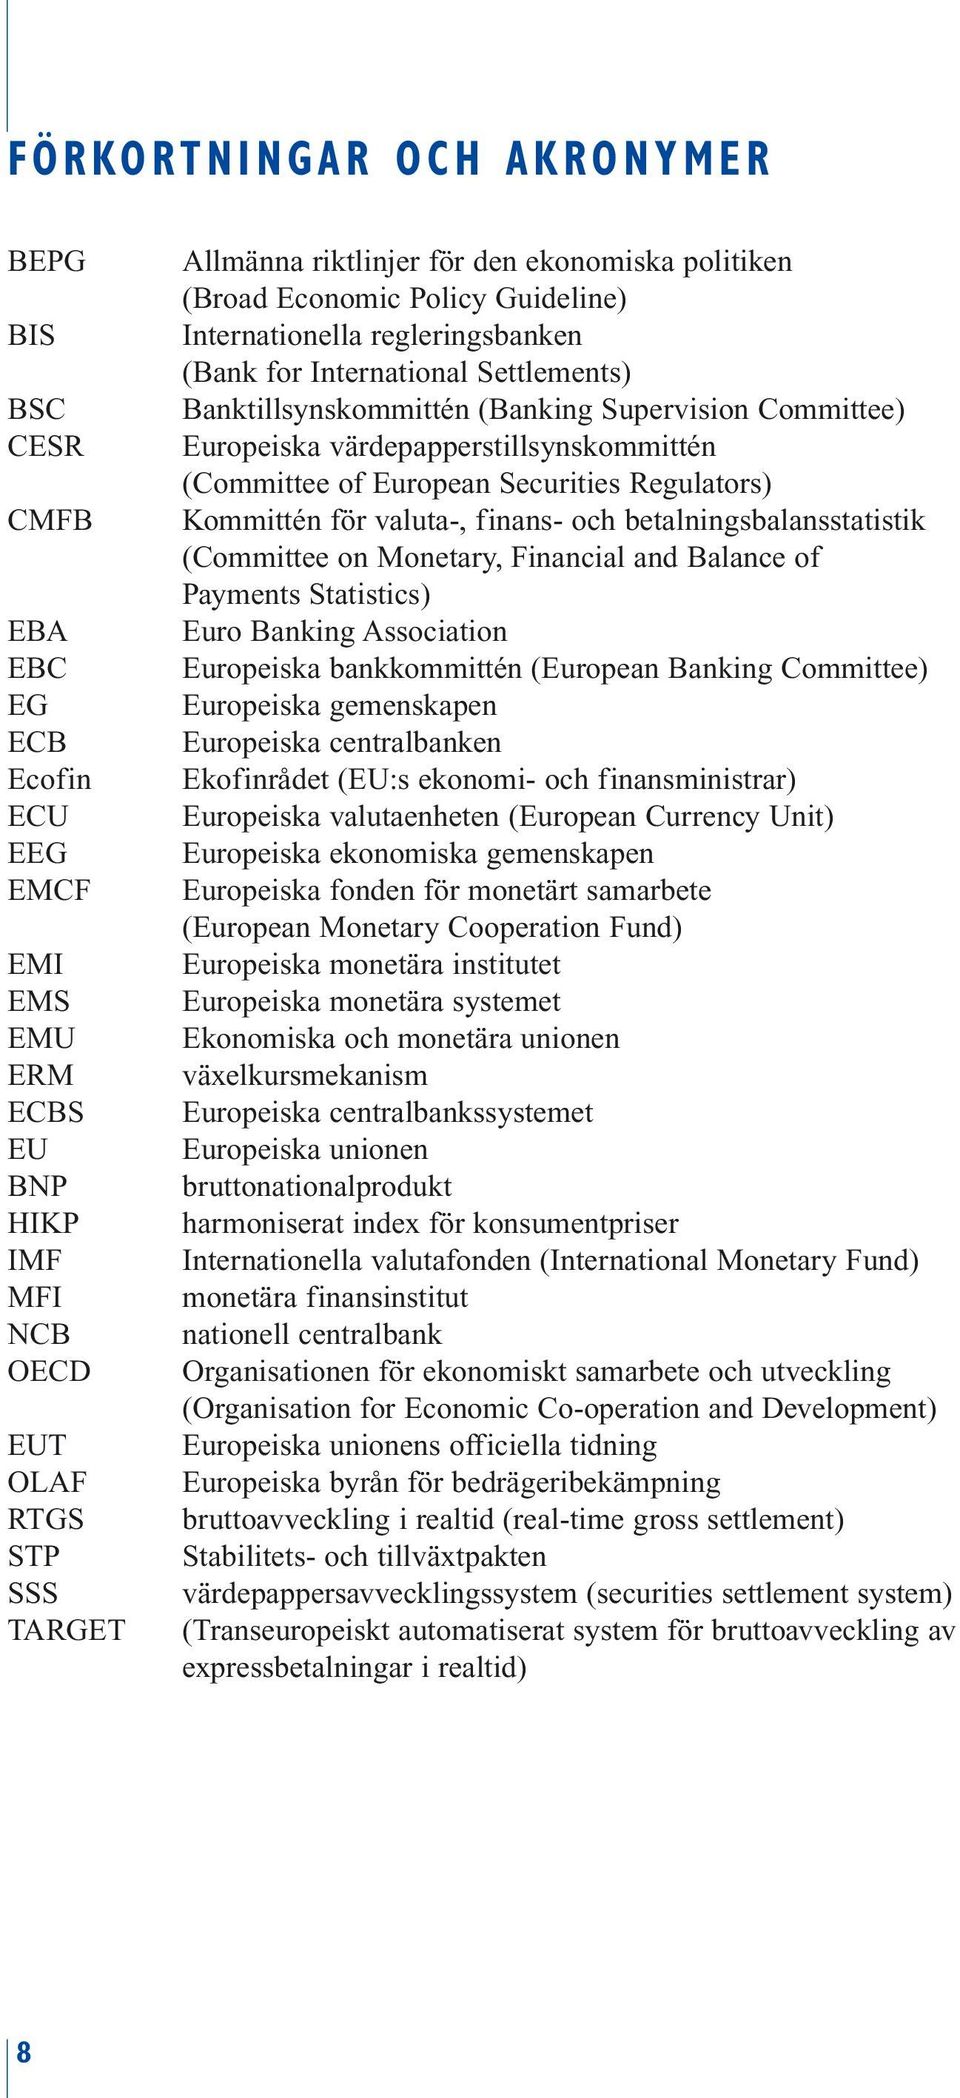 värdepapperstillsynskommittén (Committee of European Securities Regulators) Kommittén för valuta-, finans- och betalningsbalansstatistik (Committee on Monetary, Financial and Balance of Payments